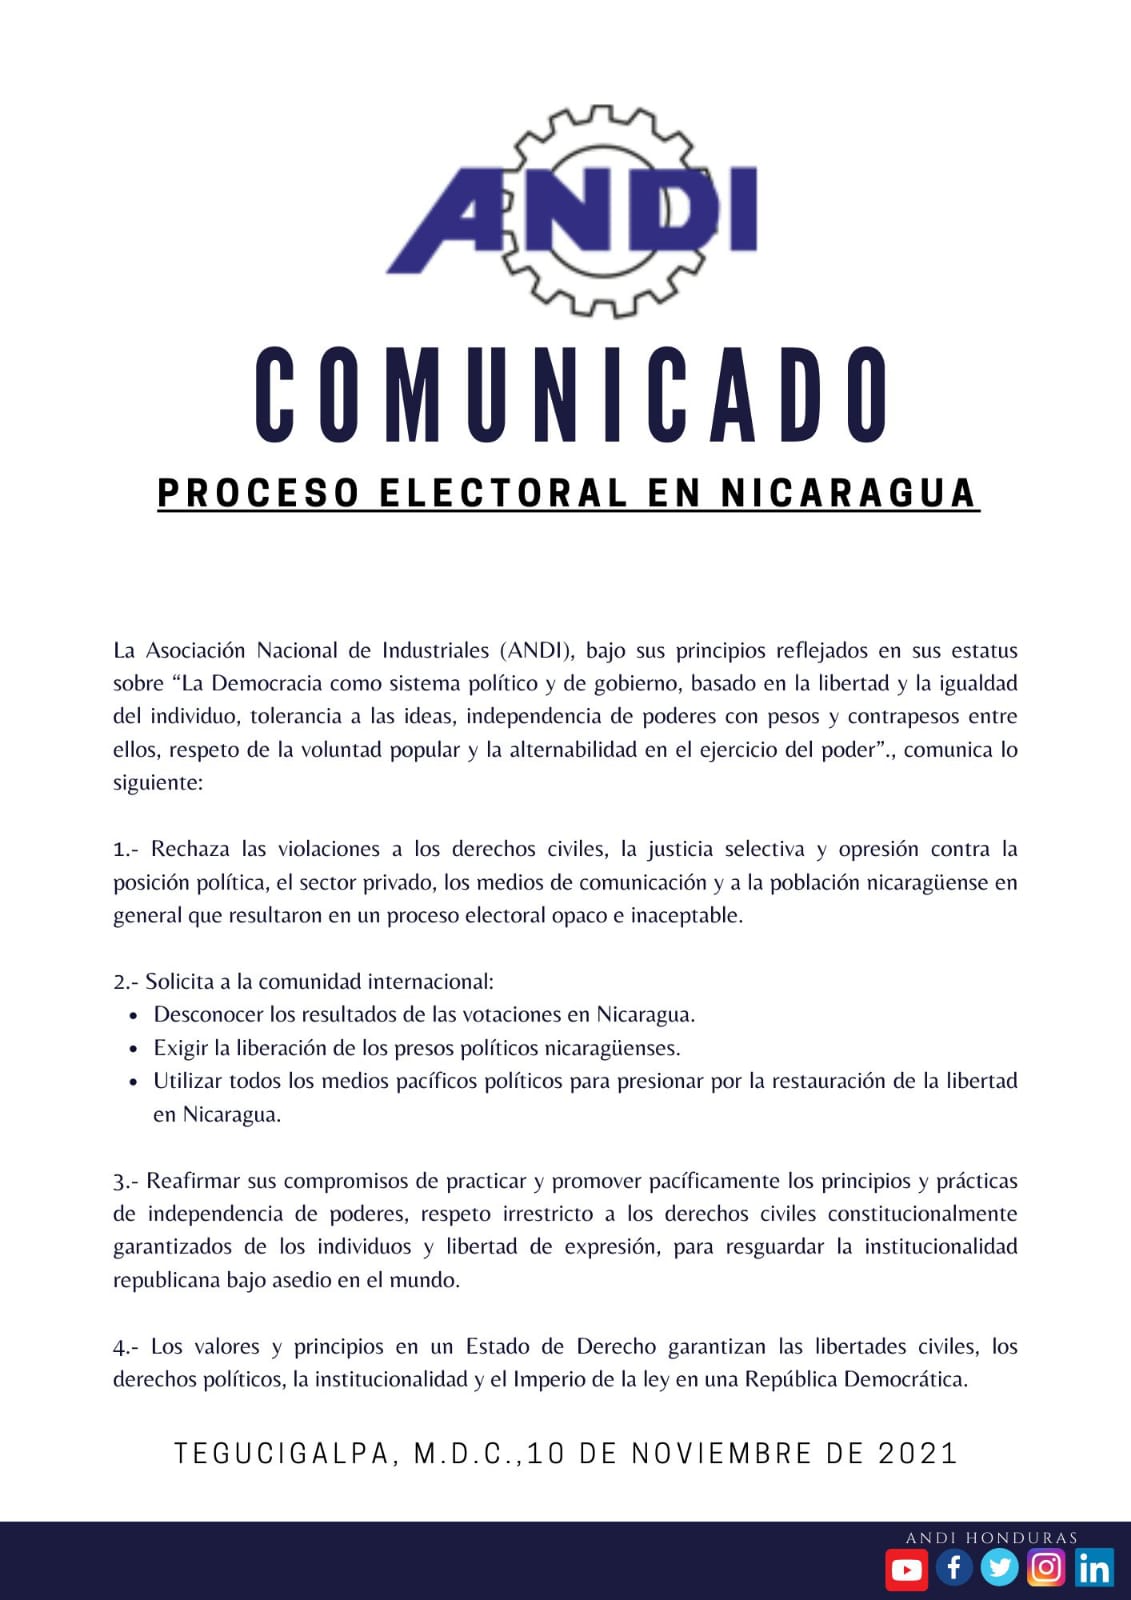 ANDI Nicaragua elecciones